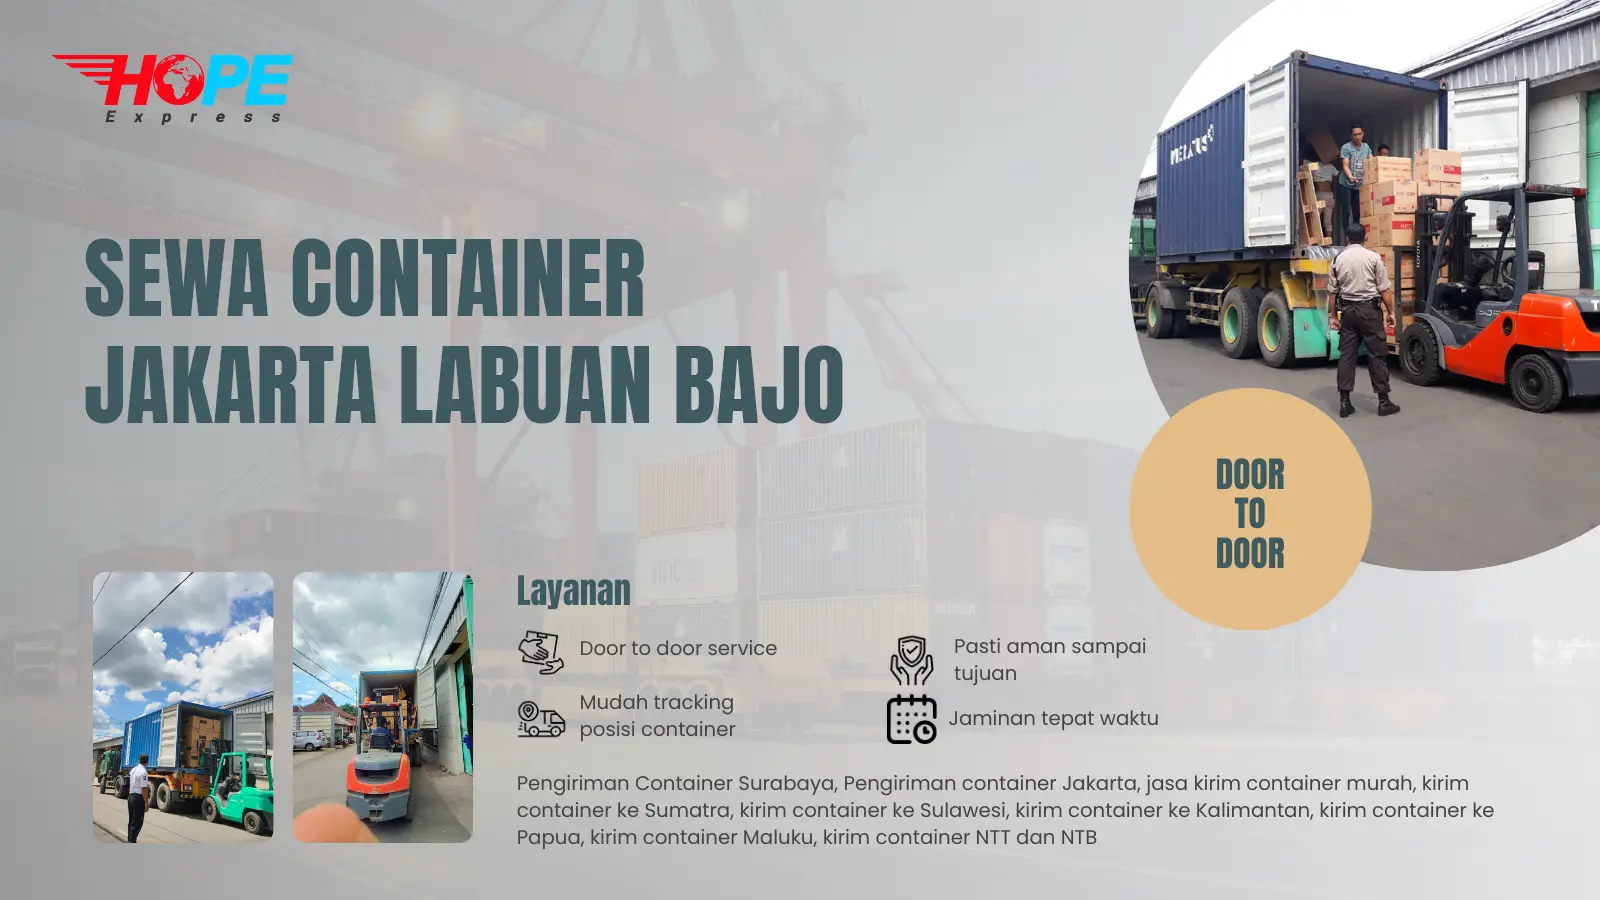 Sewa Container Jakarta Labuan Bajo